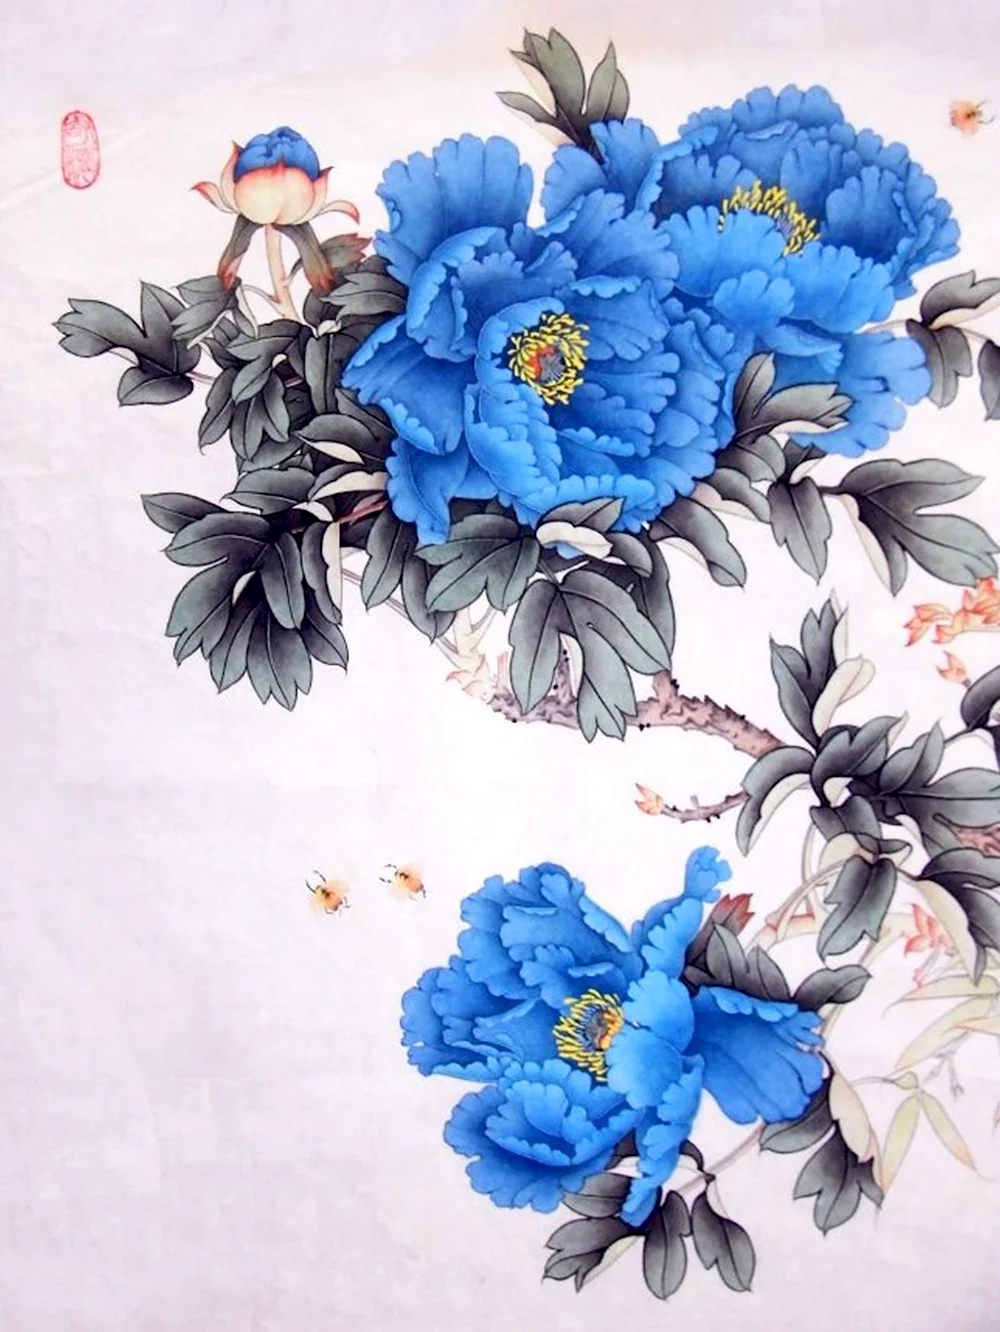 Китайская традиционная живопись синий пион